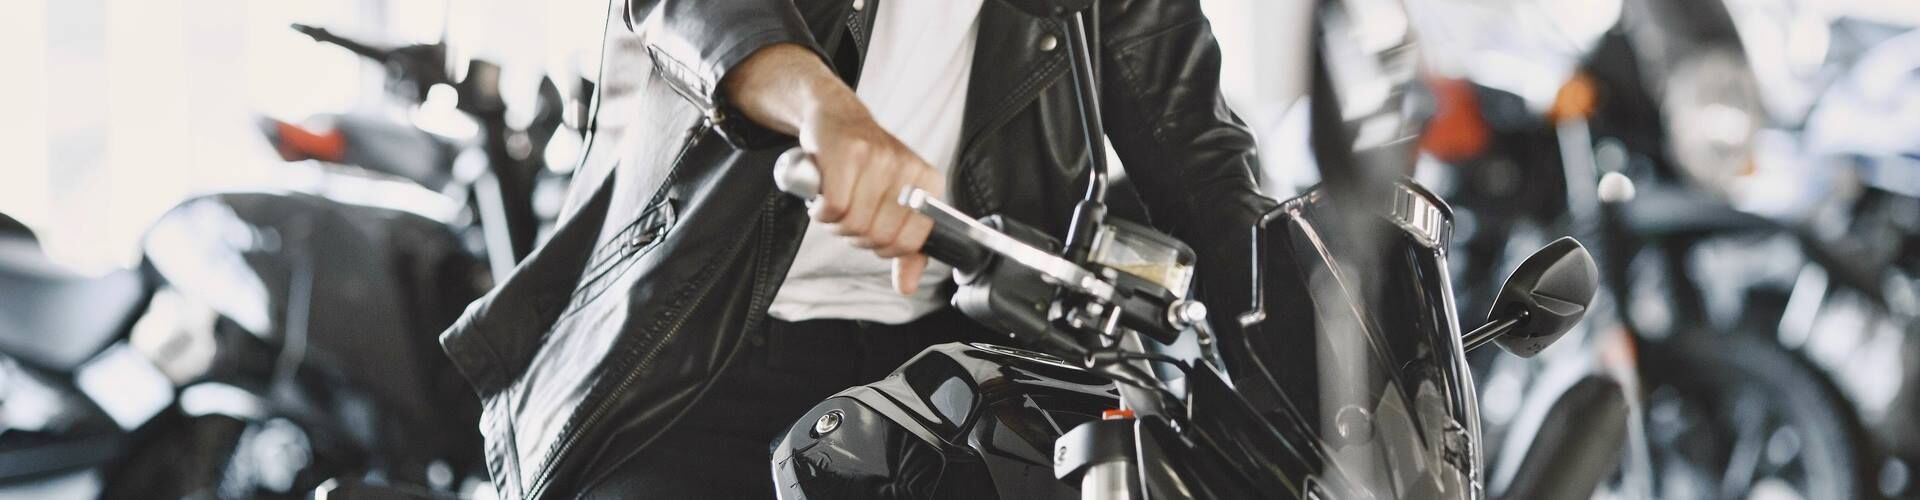 ¿Cómo saber si una moto tiene cargas?